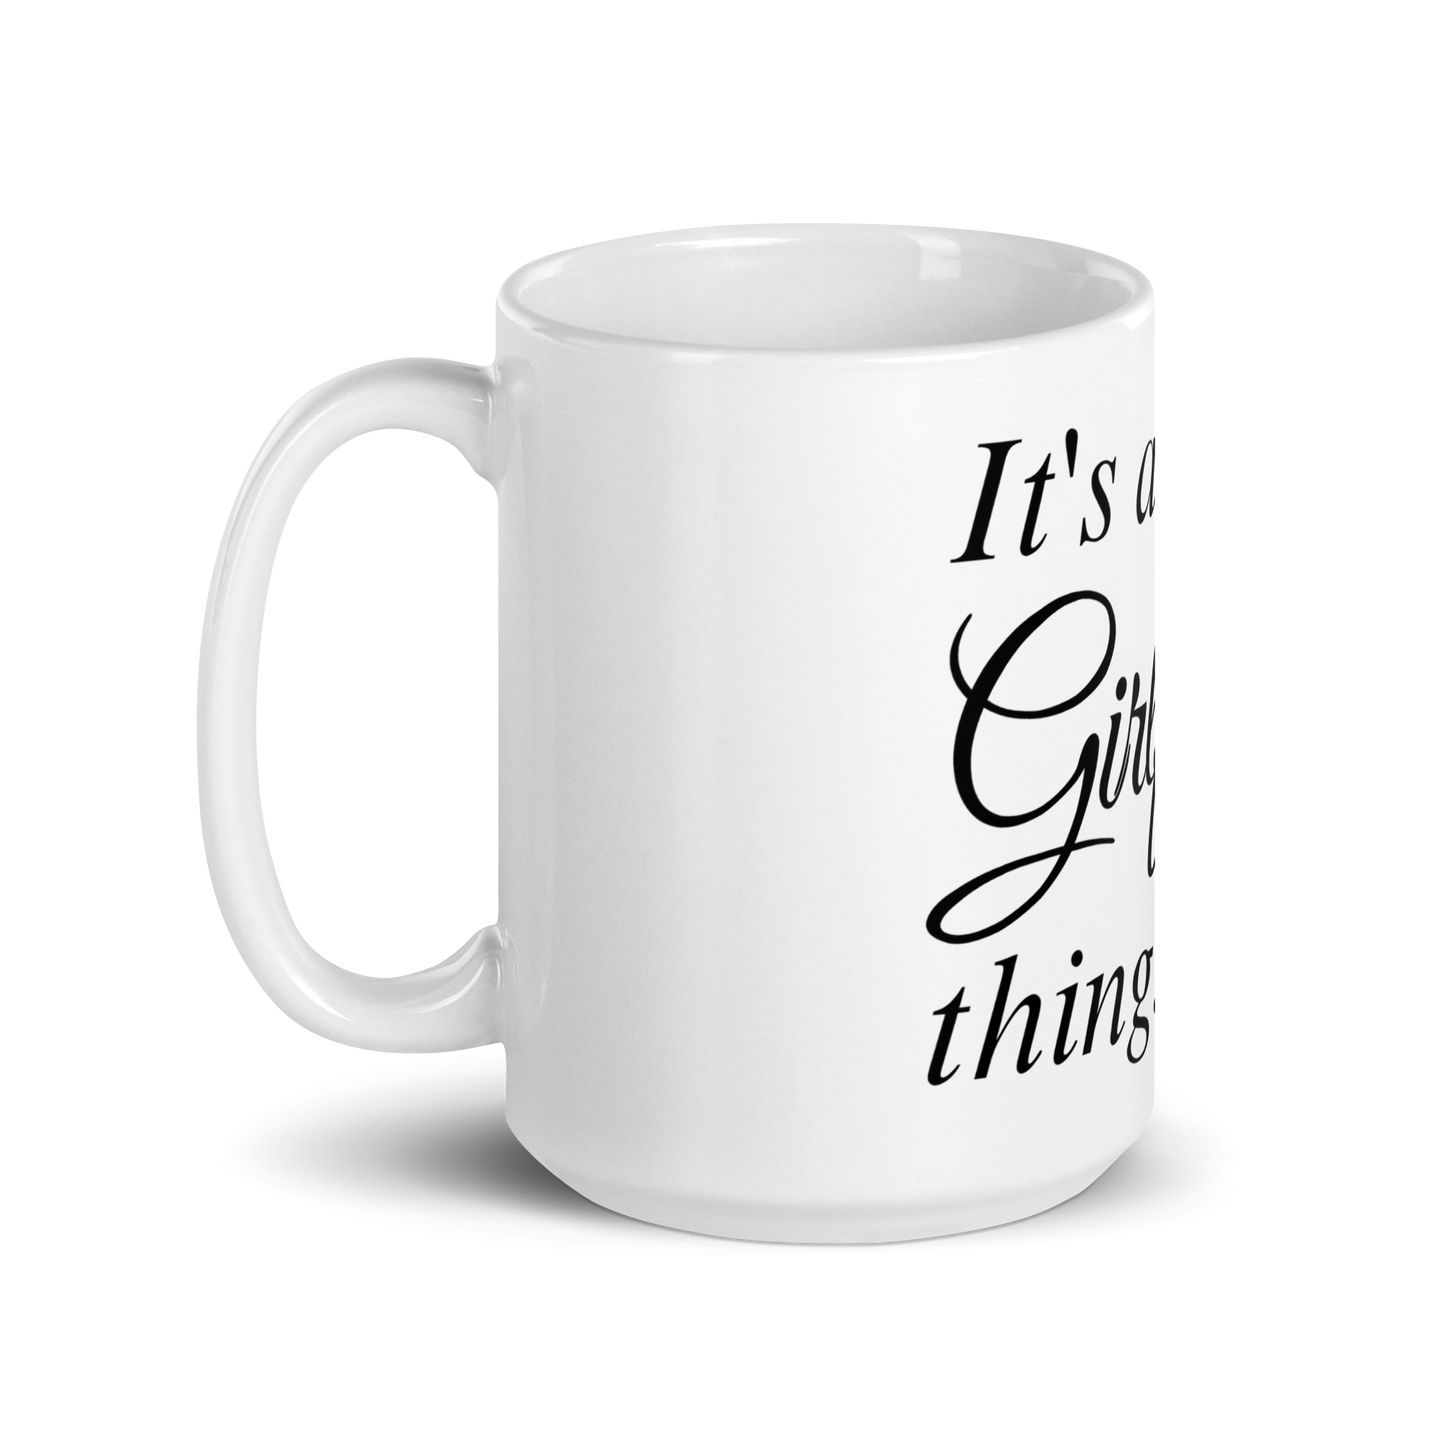 It's A Girlfriend Thing - White Glossy Mug